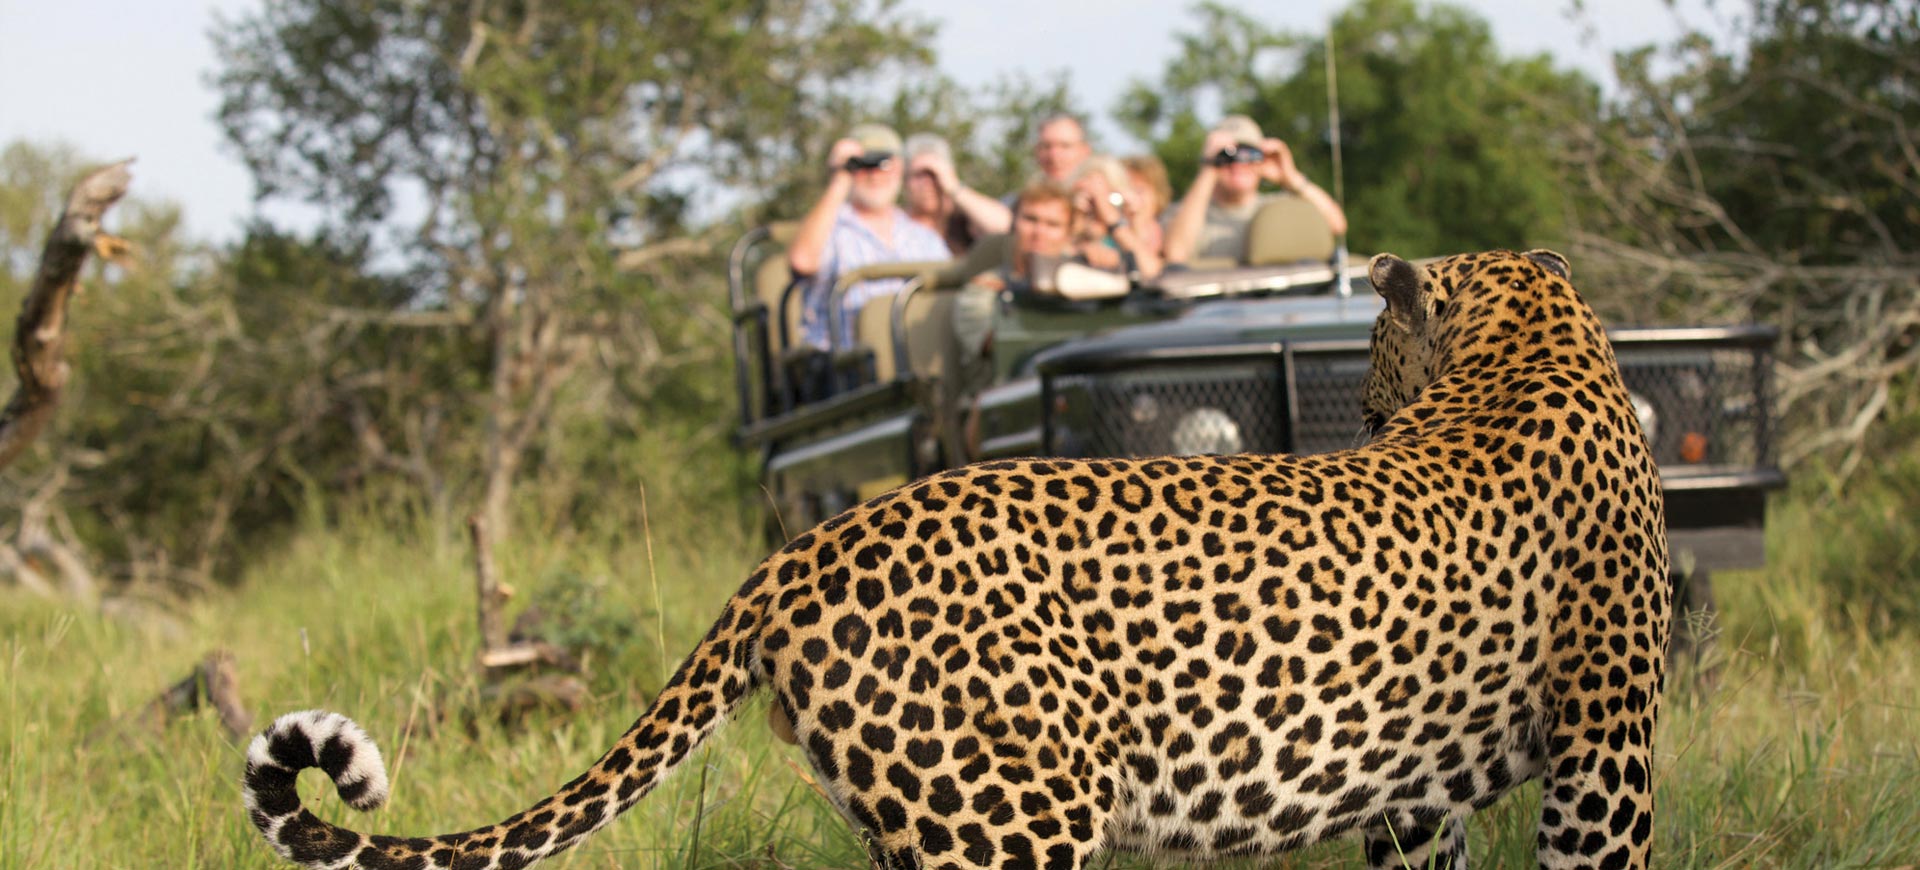 Safari Game Drive Kruger Park leopard